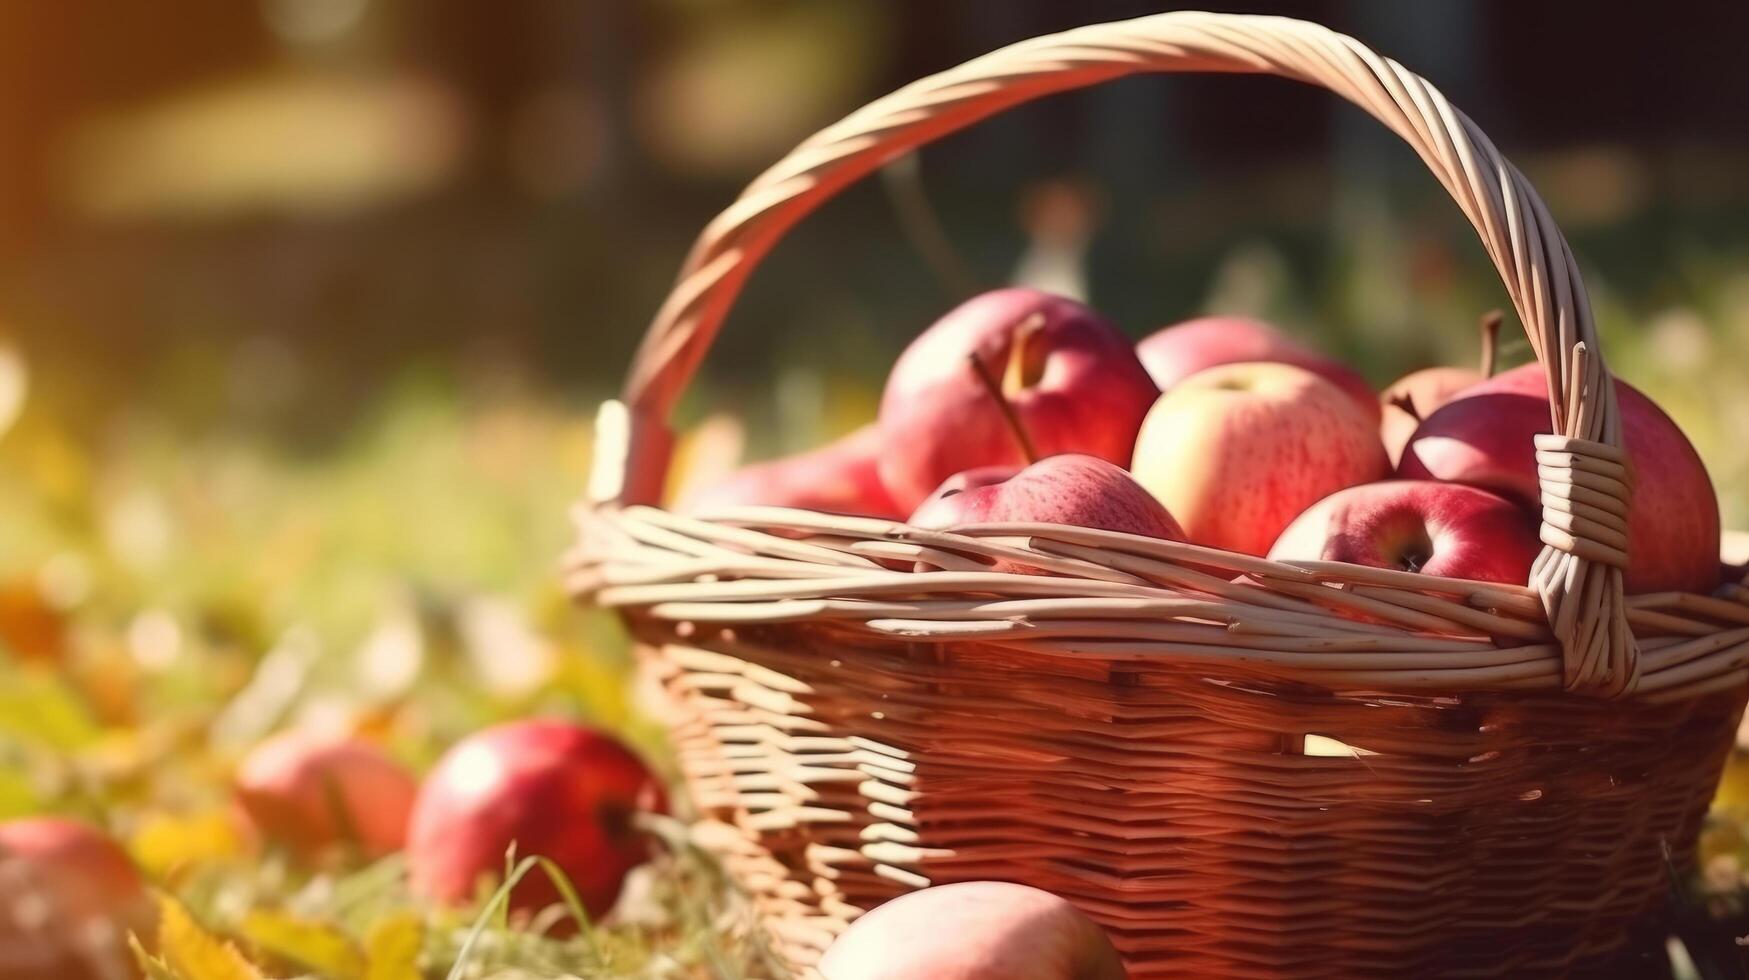 Apples in basket. Illustration photo